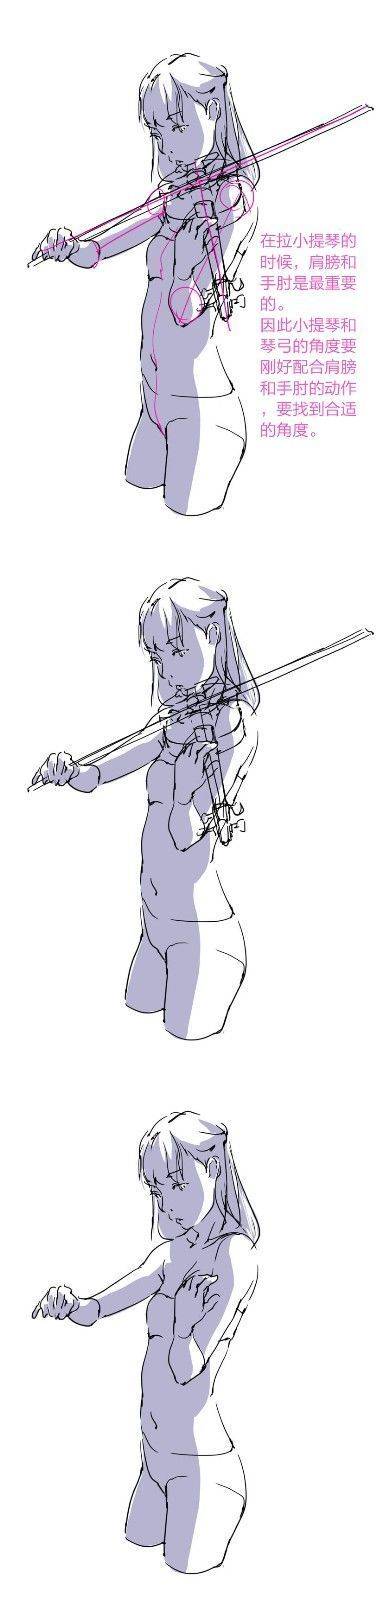 绘拉小提琴的人pose参考!喜欢可以练习,转需~( 作者toshi)